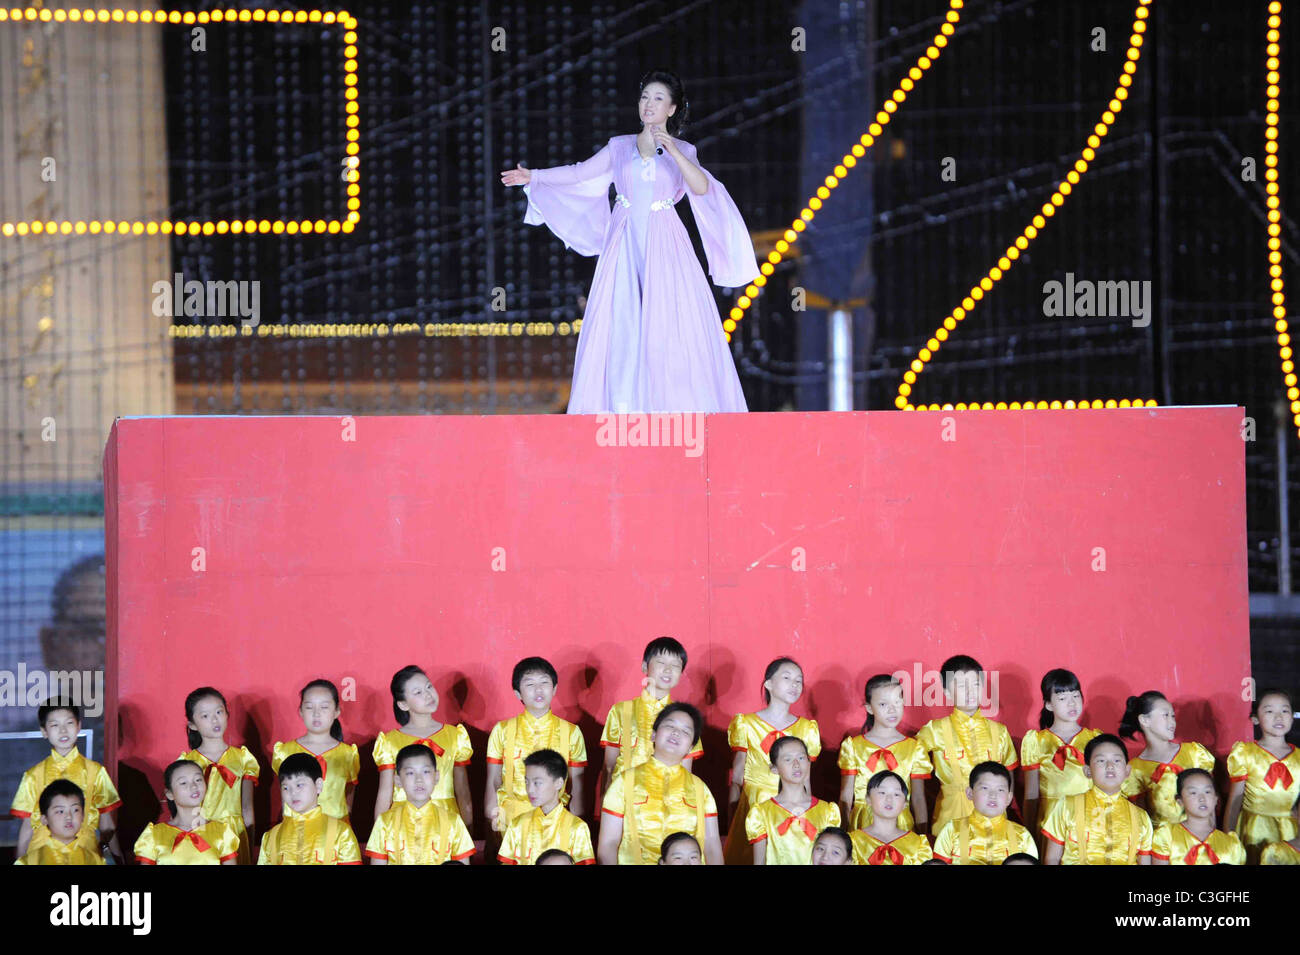 Peng Liyuan, famoso cantante,moglie di Xi Jinping esegue durante la serata di gala in Piazza Tian'anmen a Pechino, Cina nel mese di ottobre Foto Stock